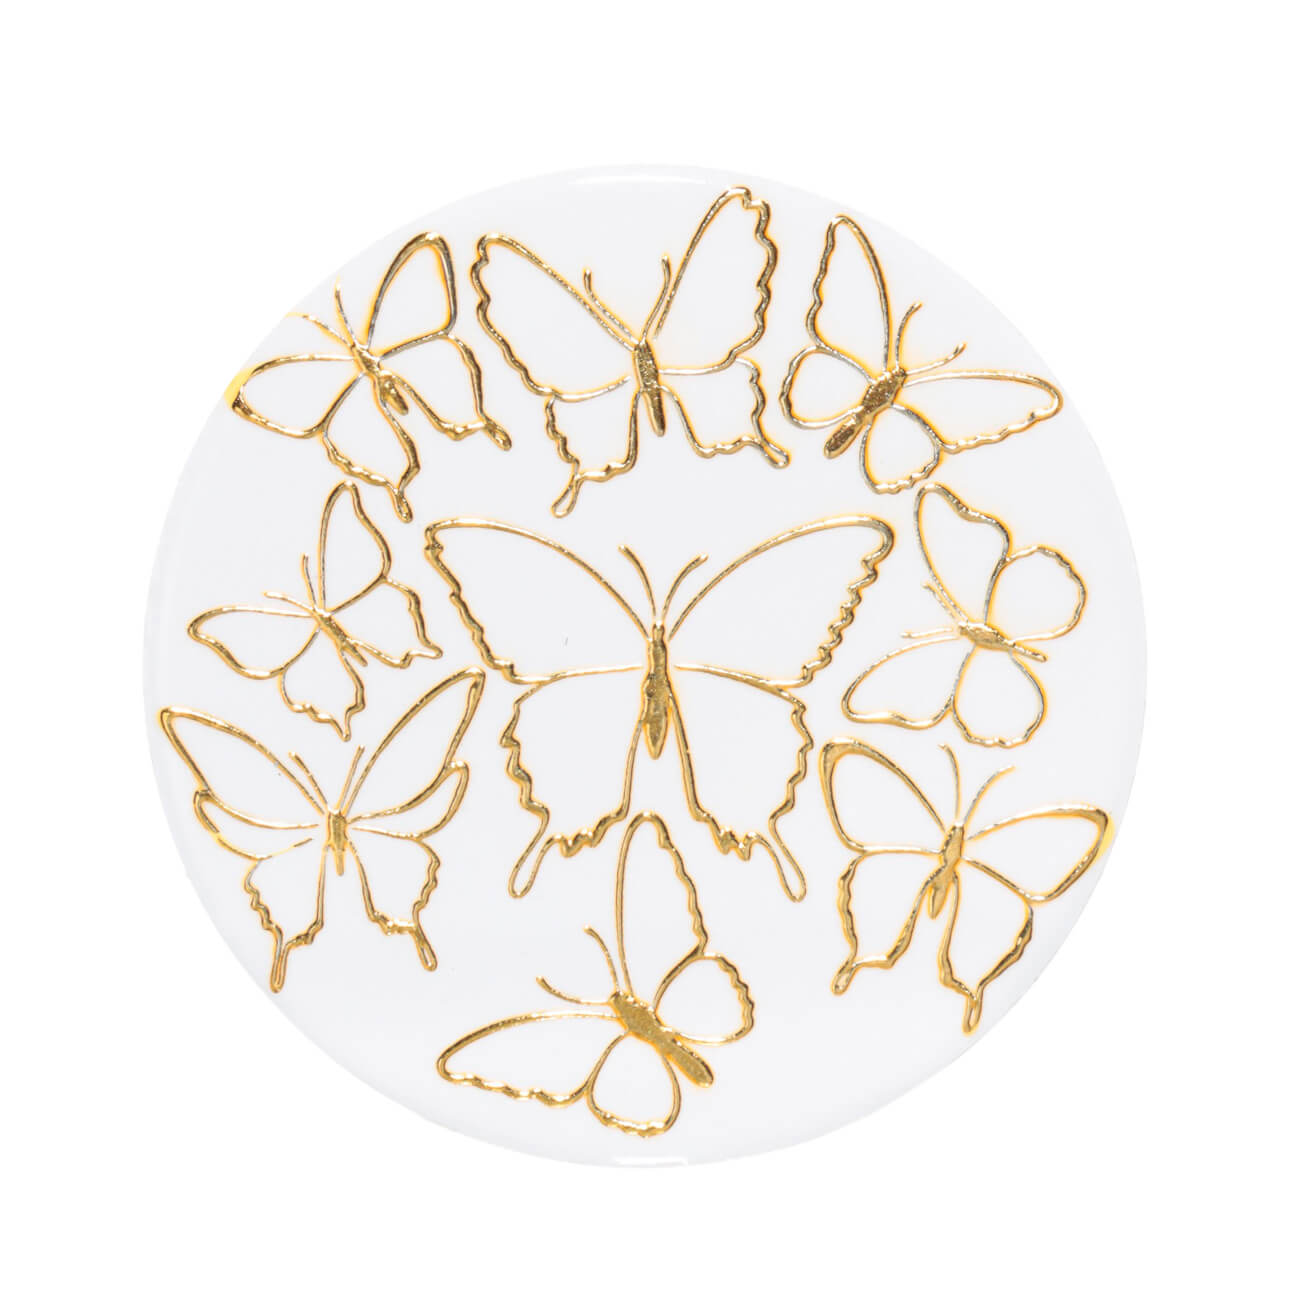 Подставка под кружку, 11 см, керамика/пробка, круглая, белая, Золотистые бабочки, Butterfly подставка под кружку